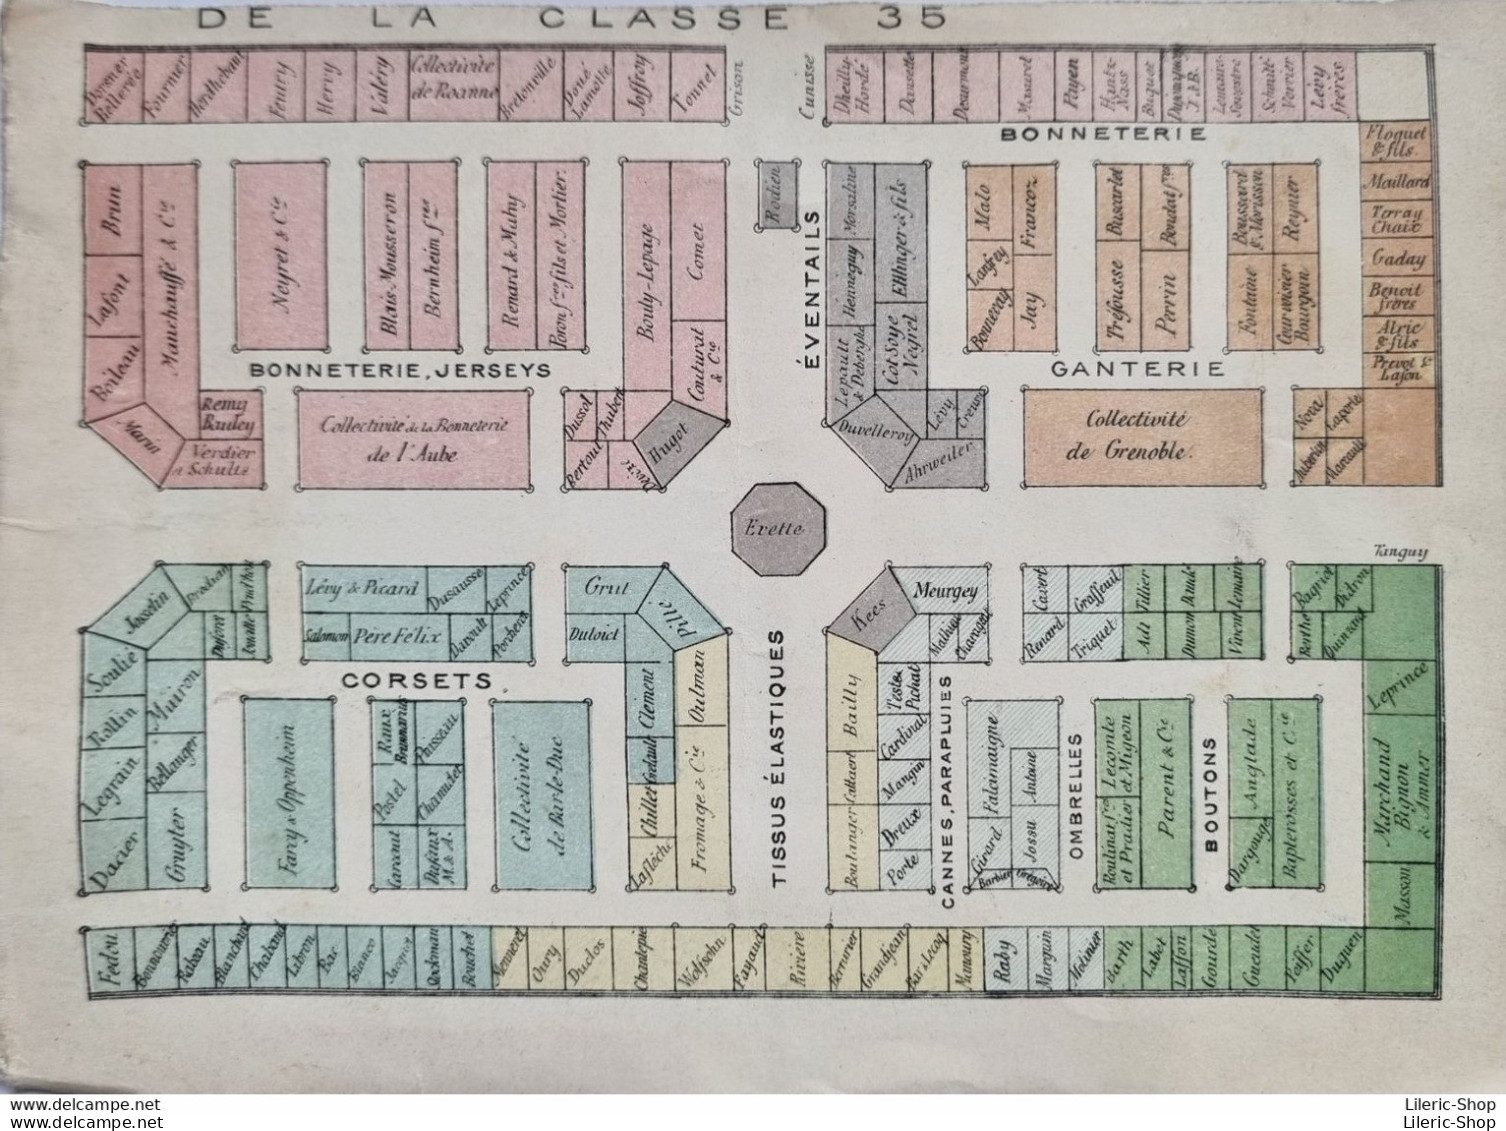 PARIS - Souvenir de l'Exposition Universelle de 1889 - offert par les exposants de la classe 35 - Fascicule en accordéon